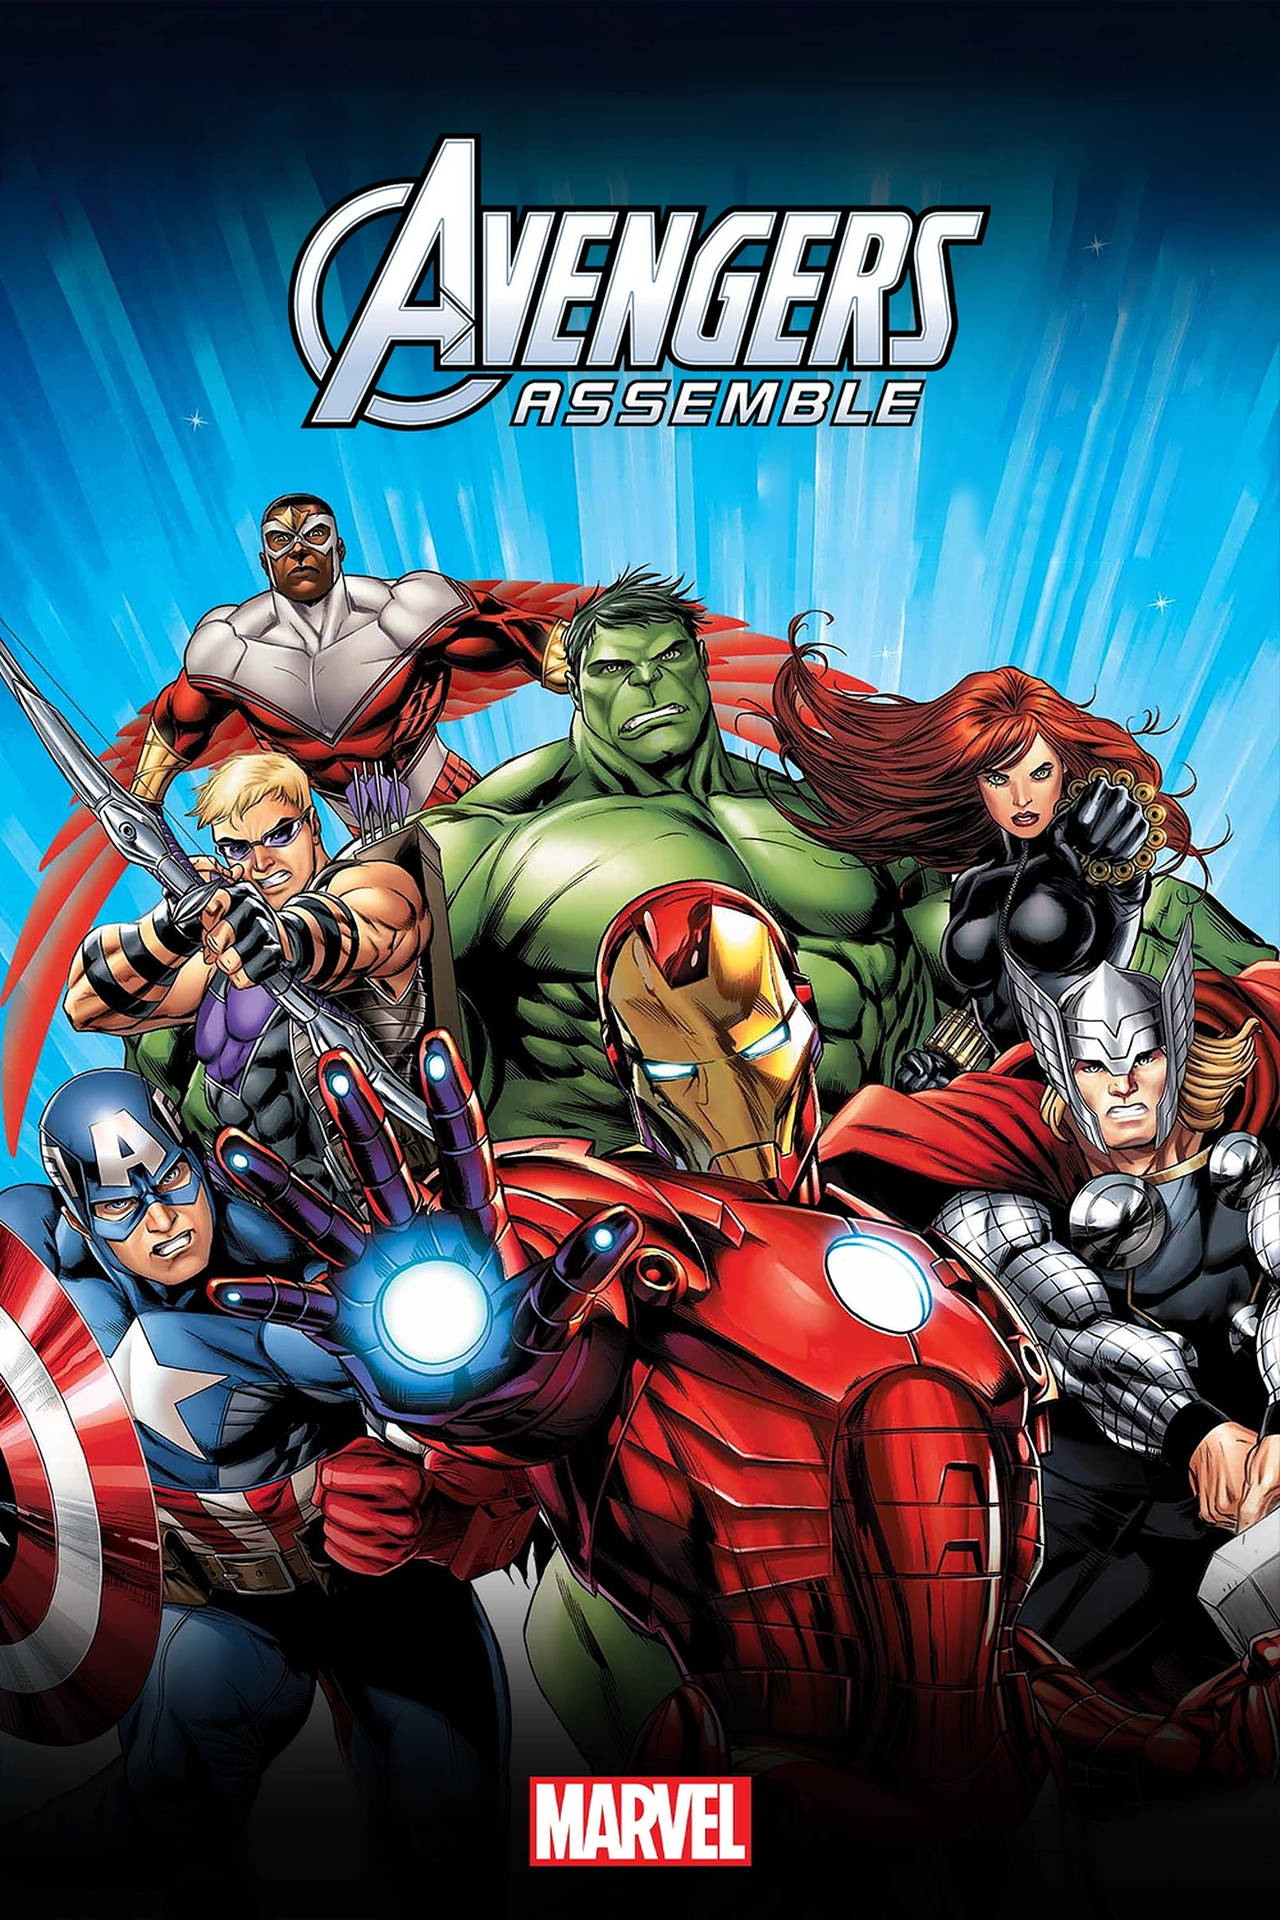 Avengers Assemble Fierce Poster Wallpaper